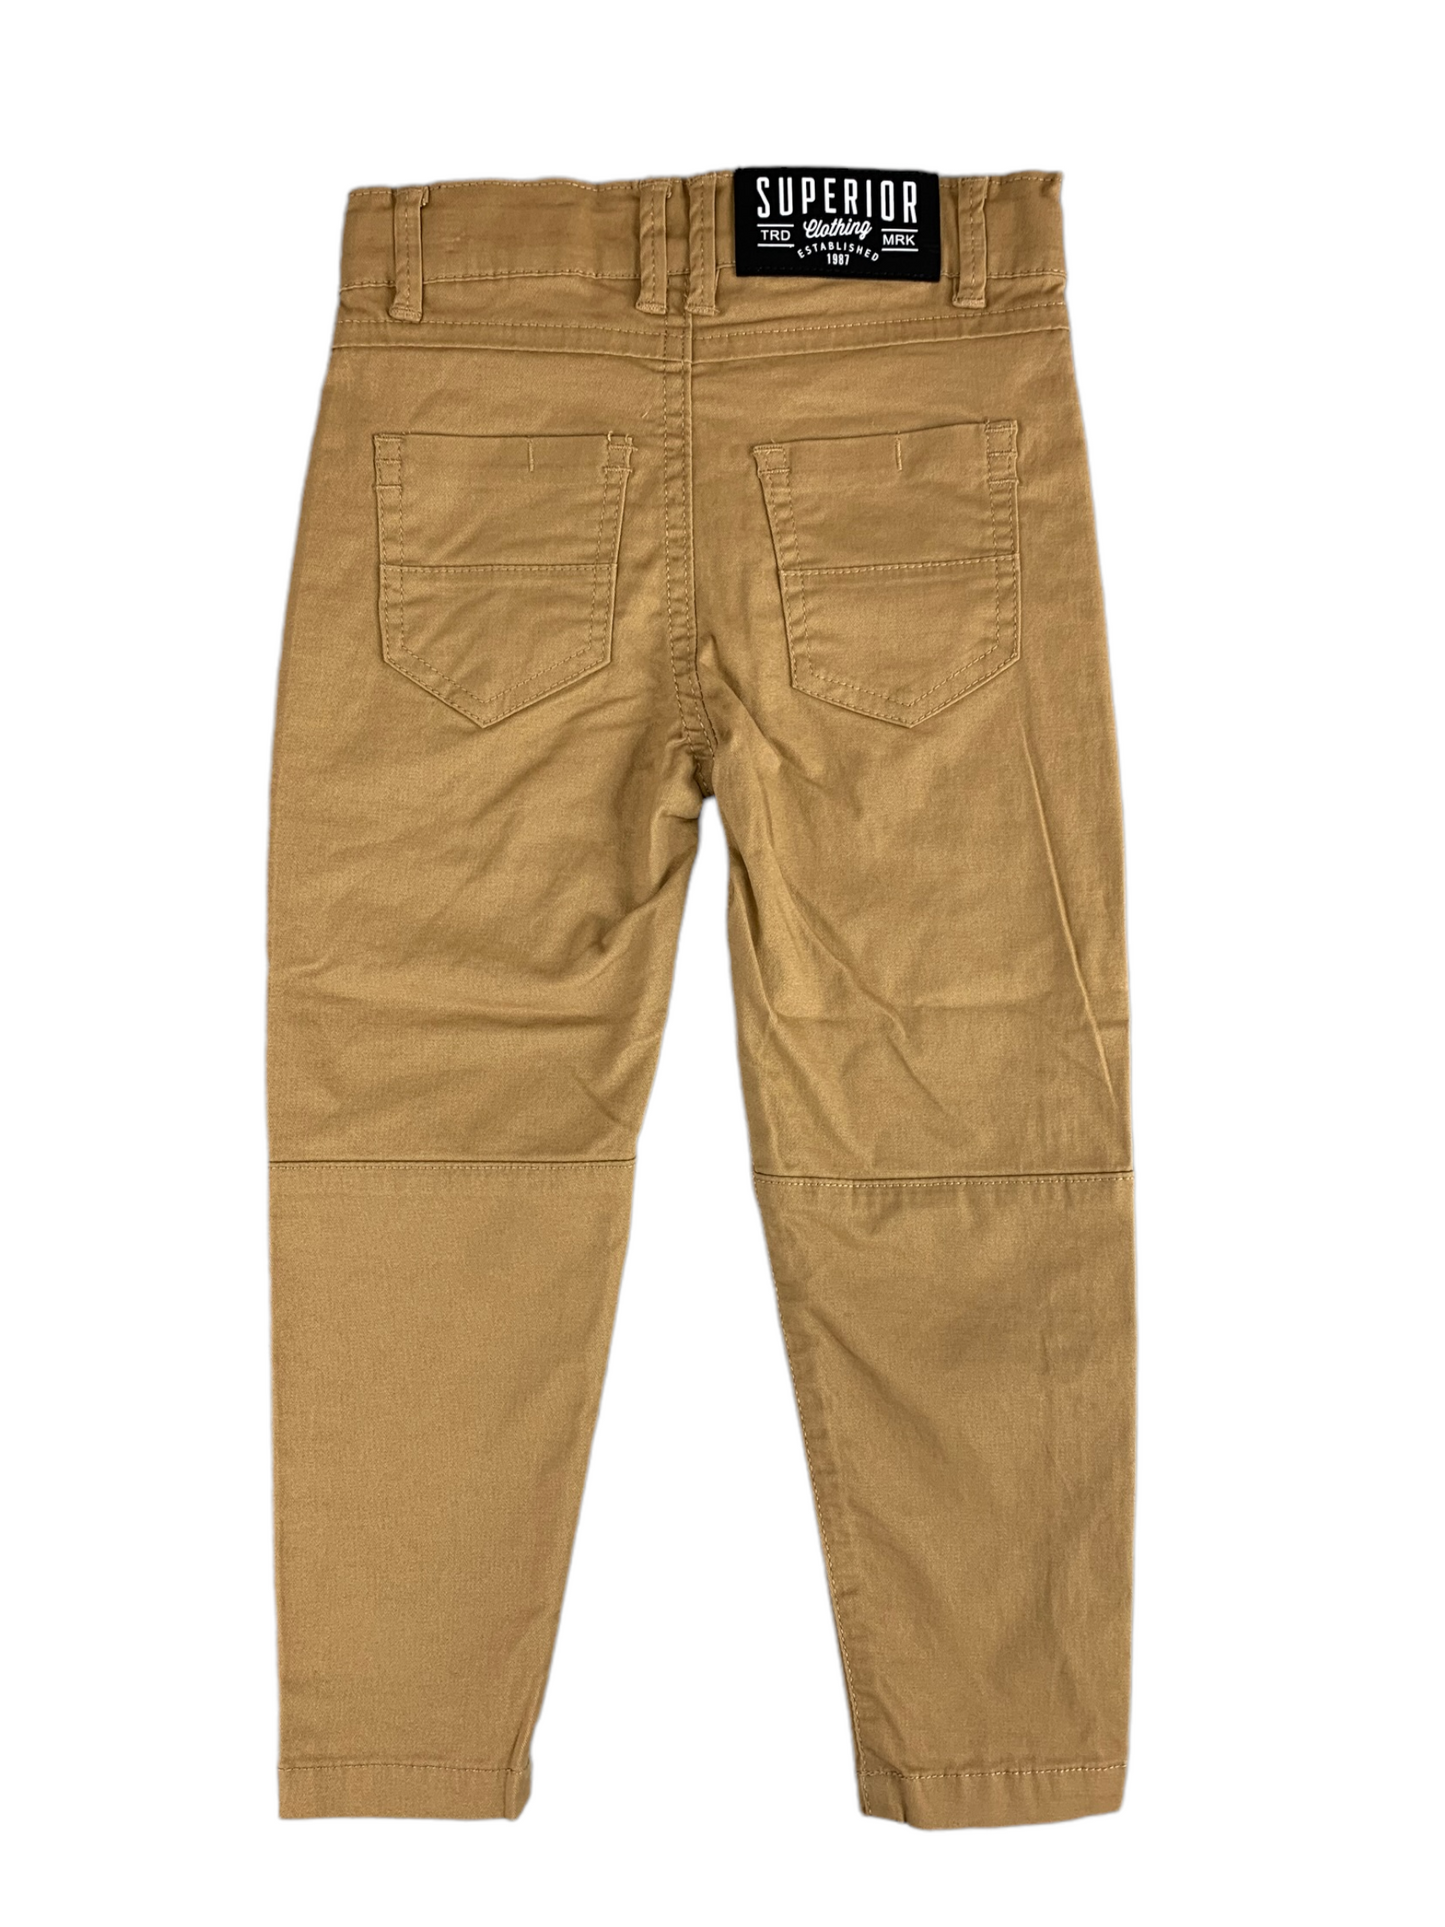 Pantalon brun pâle M.I.D. pour garçon 2 à 7 ans